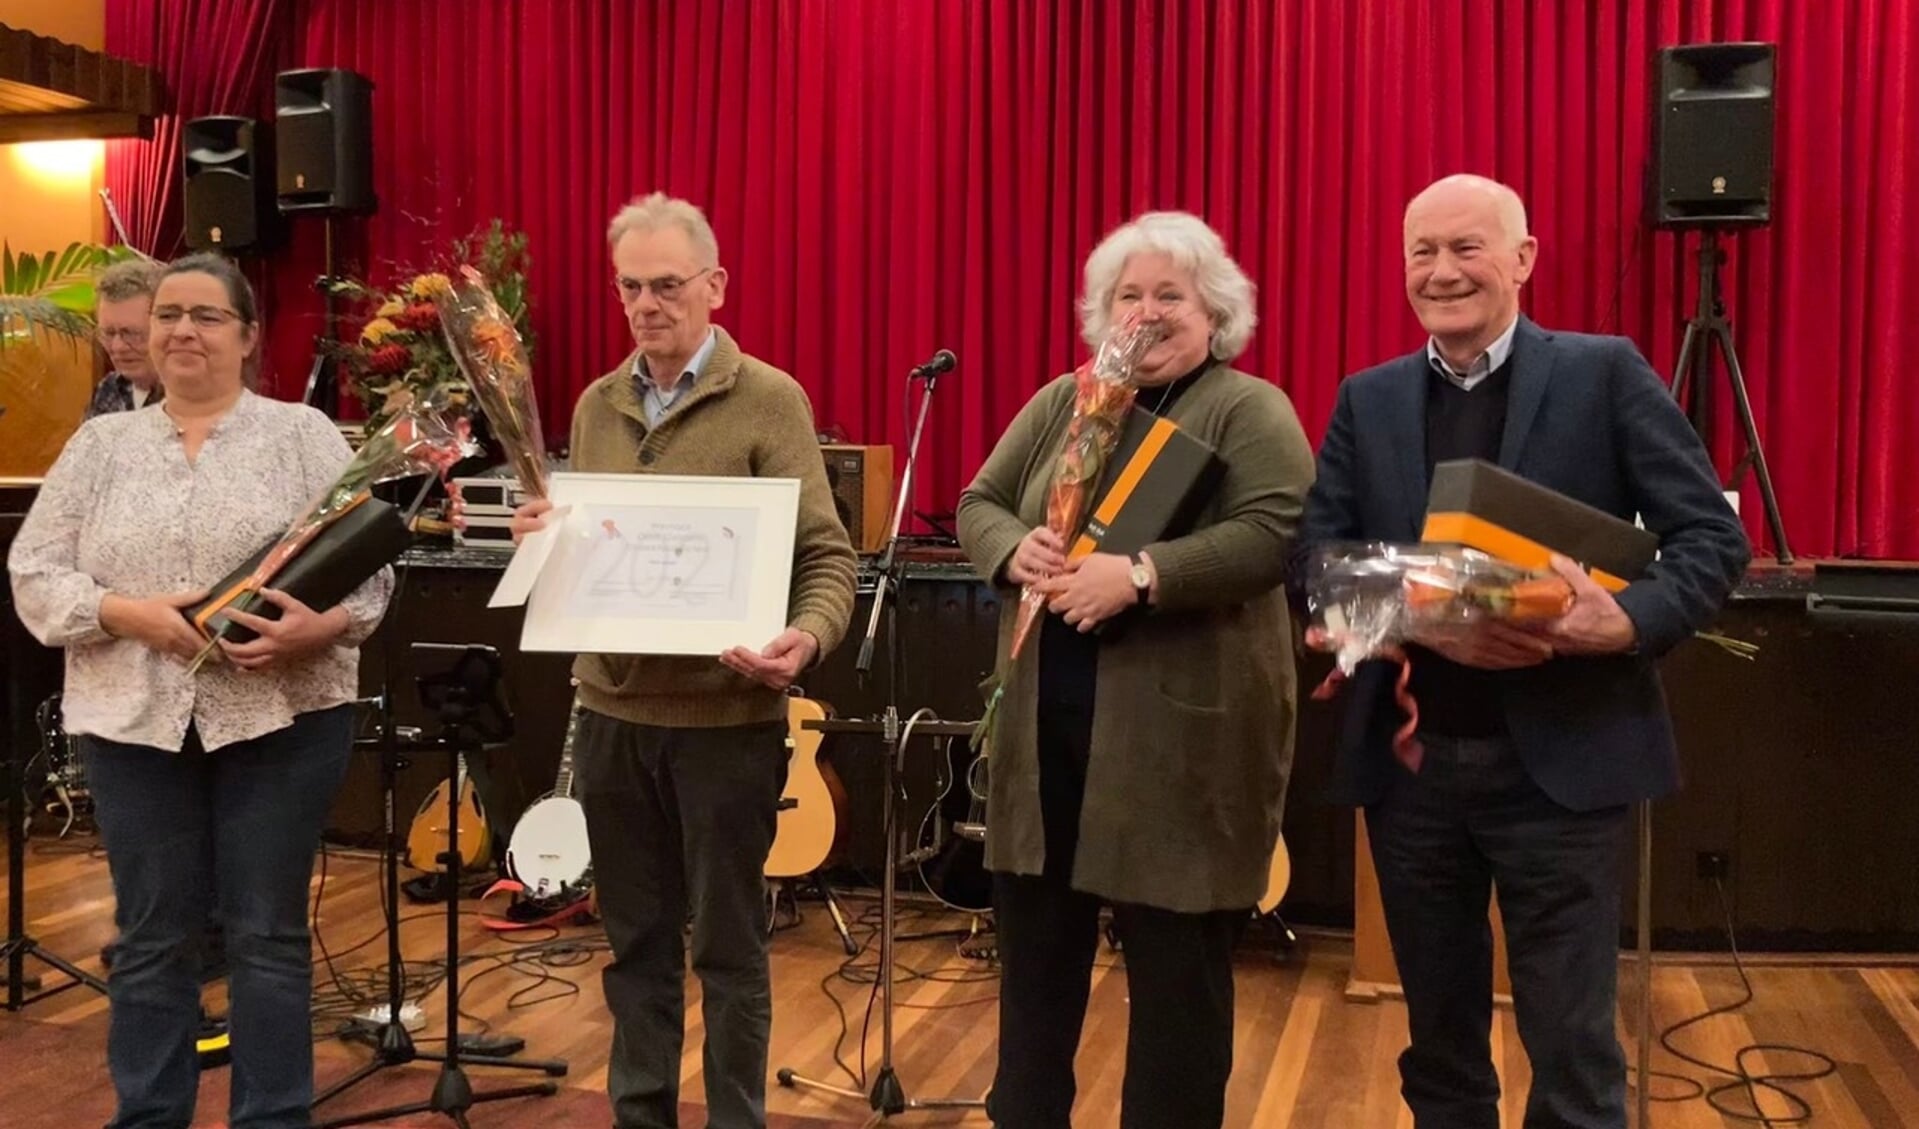 De winnaars van het Streektaaldictee zijn Willy Mentink, Jan Oonk, Mirjam Koning en Gerard Bomers. Foto: Maarten Beernink